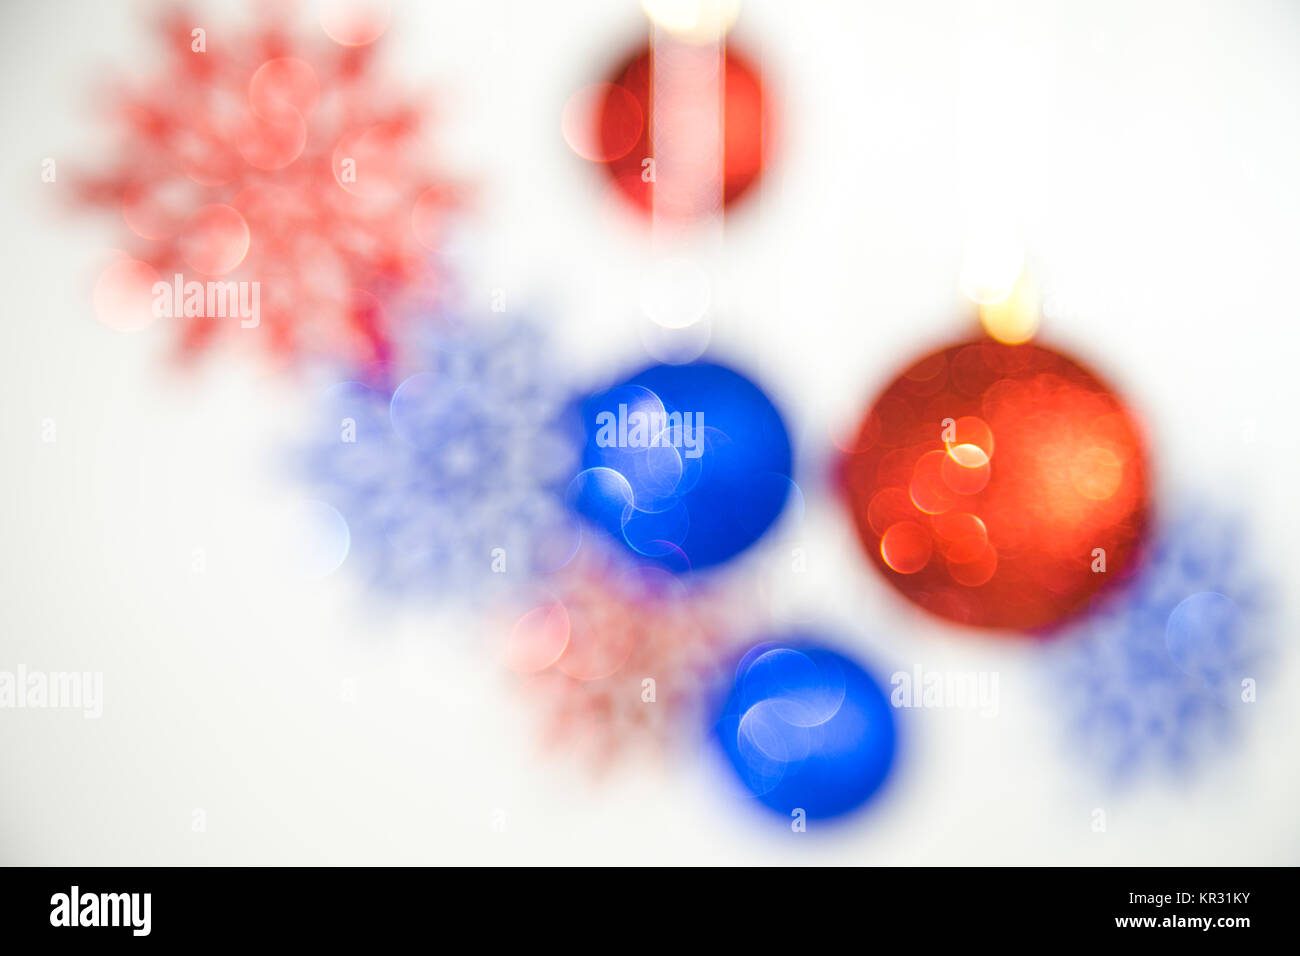 Festliche Weihnachten defokussierten Hintergrund. Neues Jahr unscharf blaue und rote Farben brillant schöne Bälle und Schneeflocken hängen an Silber Seile isoliert Stockfoto